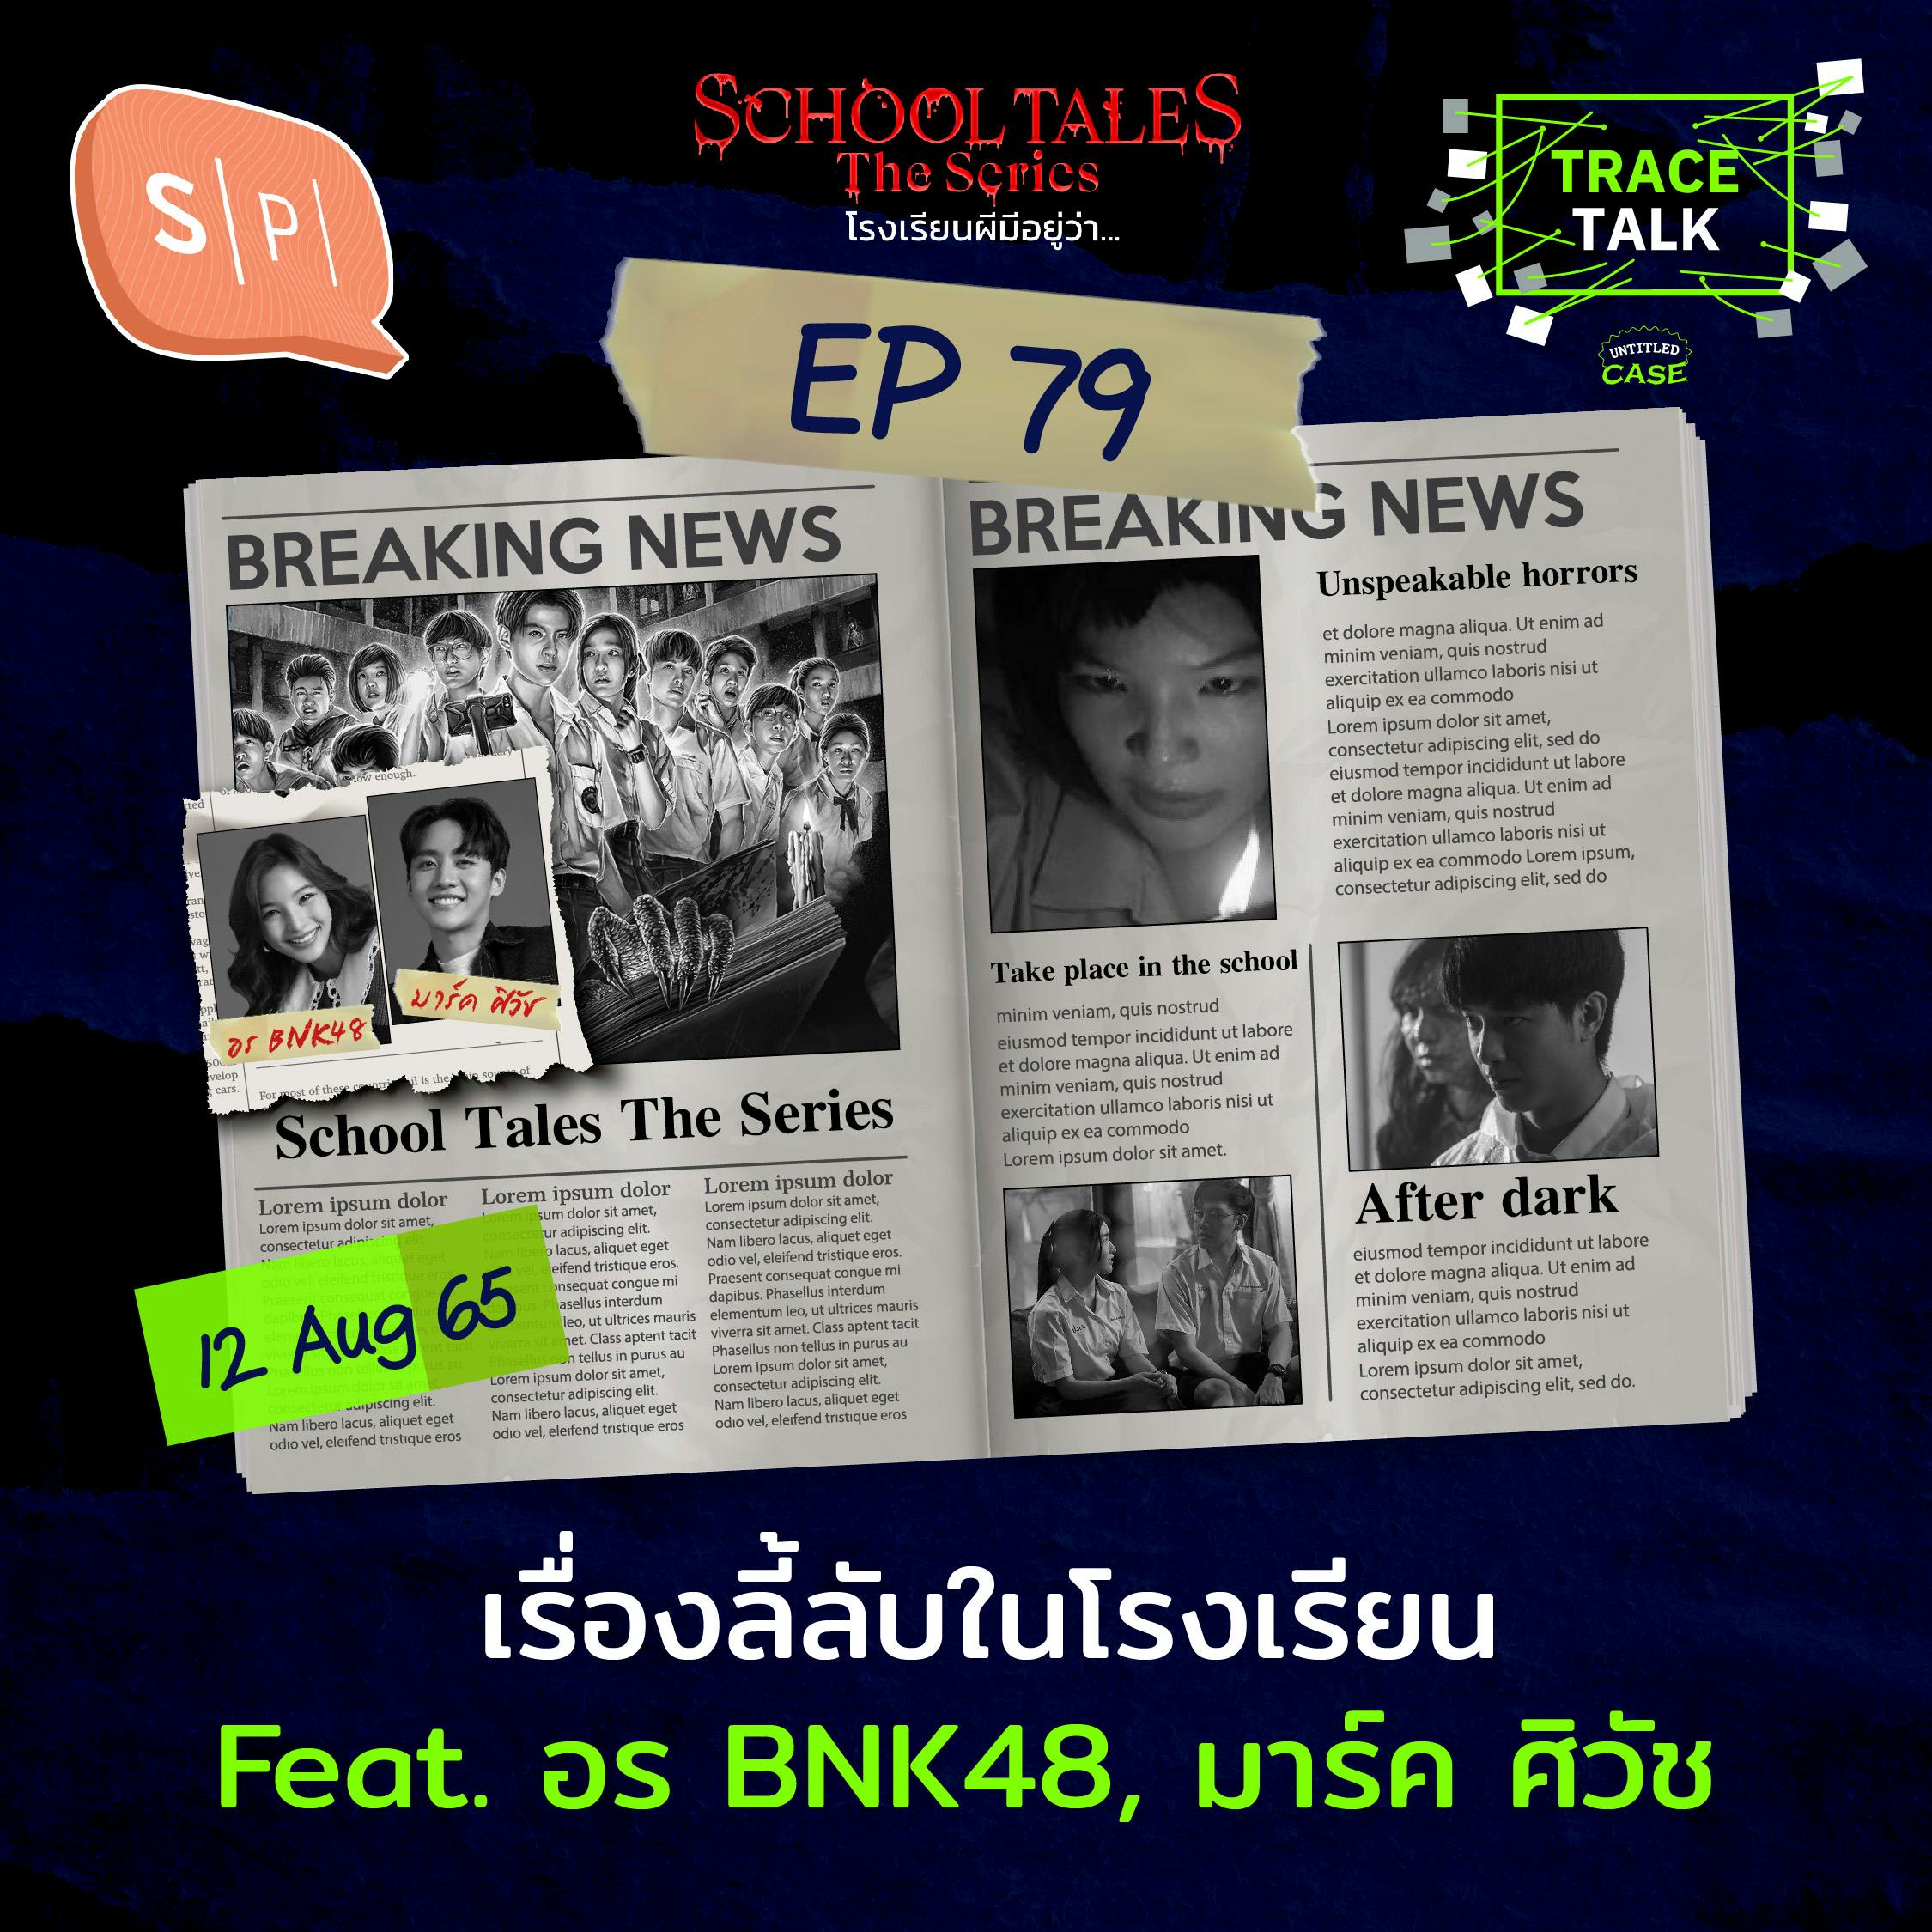 เรื่องลี้ลับในโรงเรียน กับ อร BNK48 และ มาร์ค ศิวัช | Trace Talk EP79